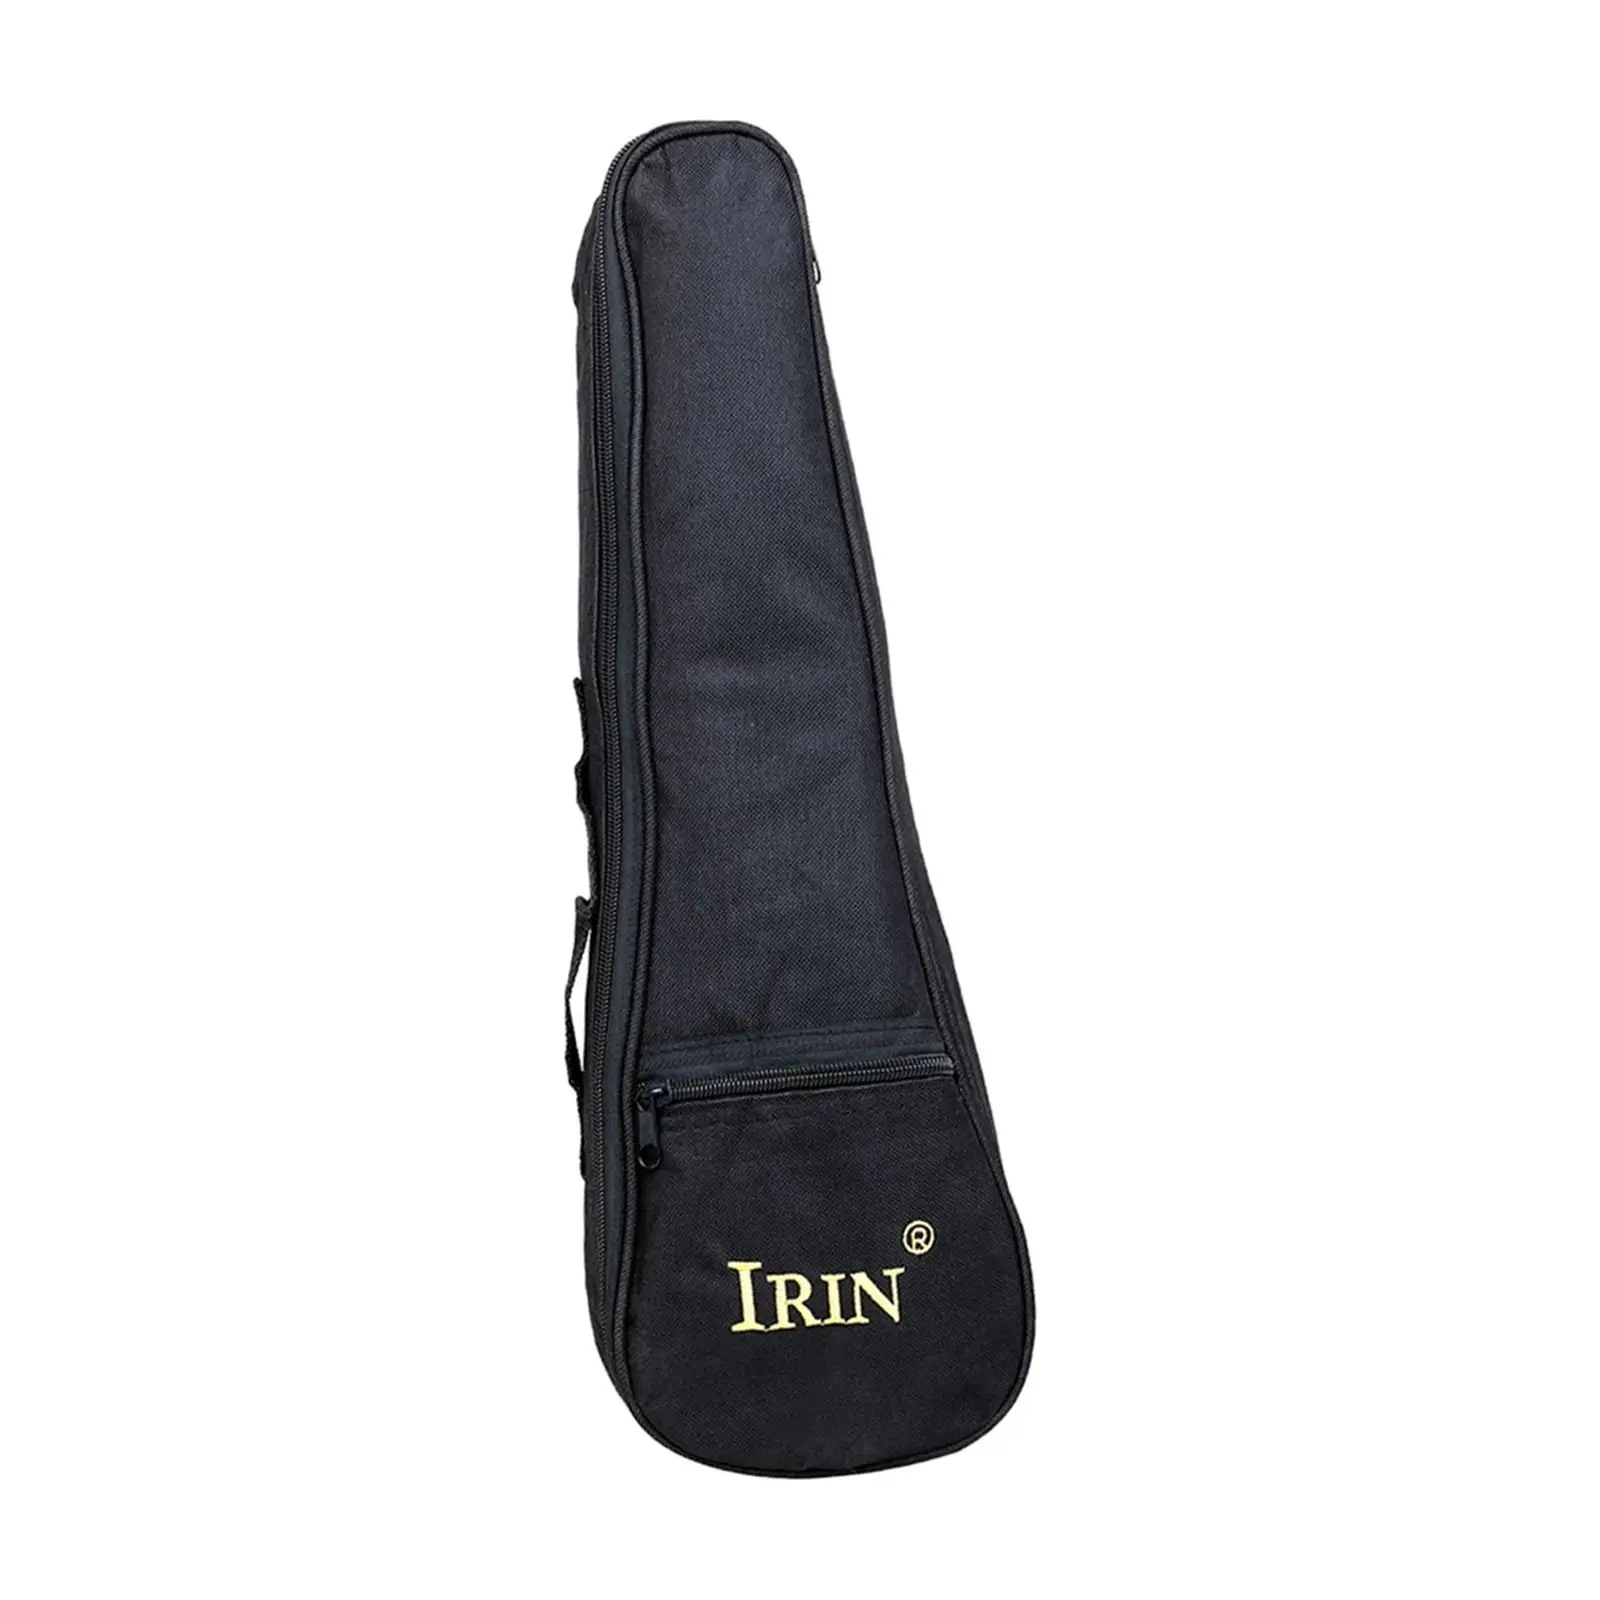 Oxford Cloth Ukulele Gig Bag W/Carrying Handle Pocket Waterproof Uke Backpack Storage Soft Case for Travel Tour Concert